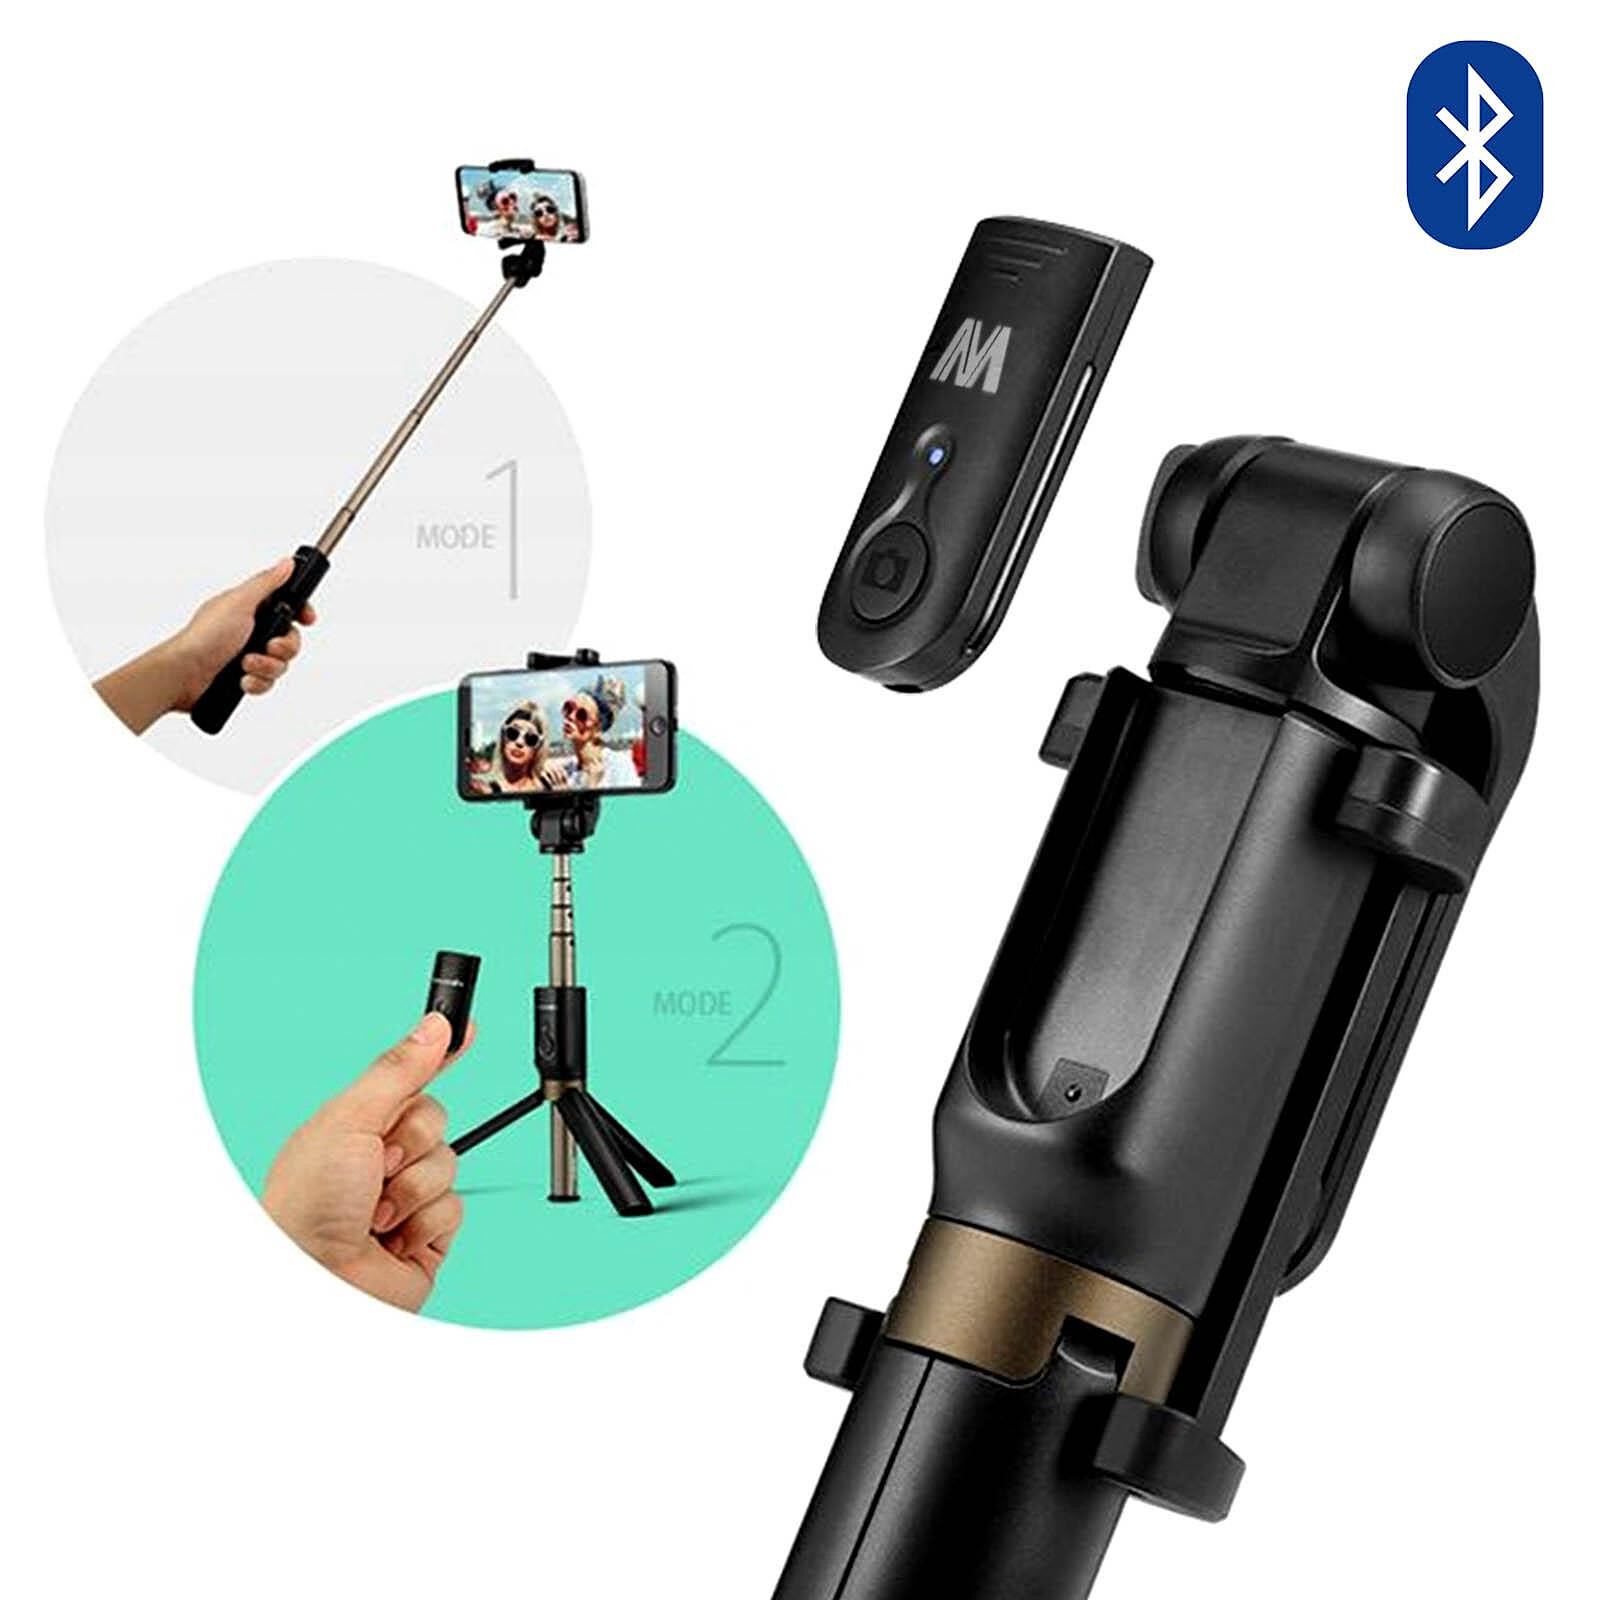 Akashi Perche selfie télescopique Bluetooth - Accessoires photo smartphone  - Garantie 3 ans LDLC